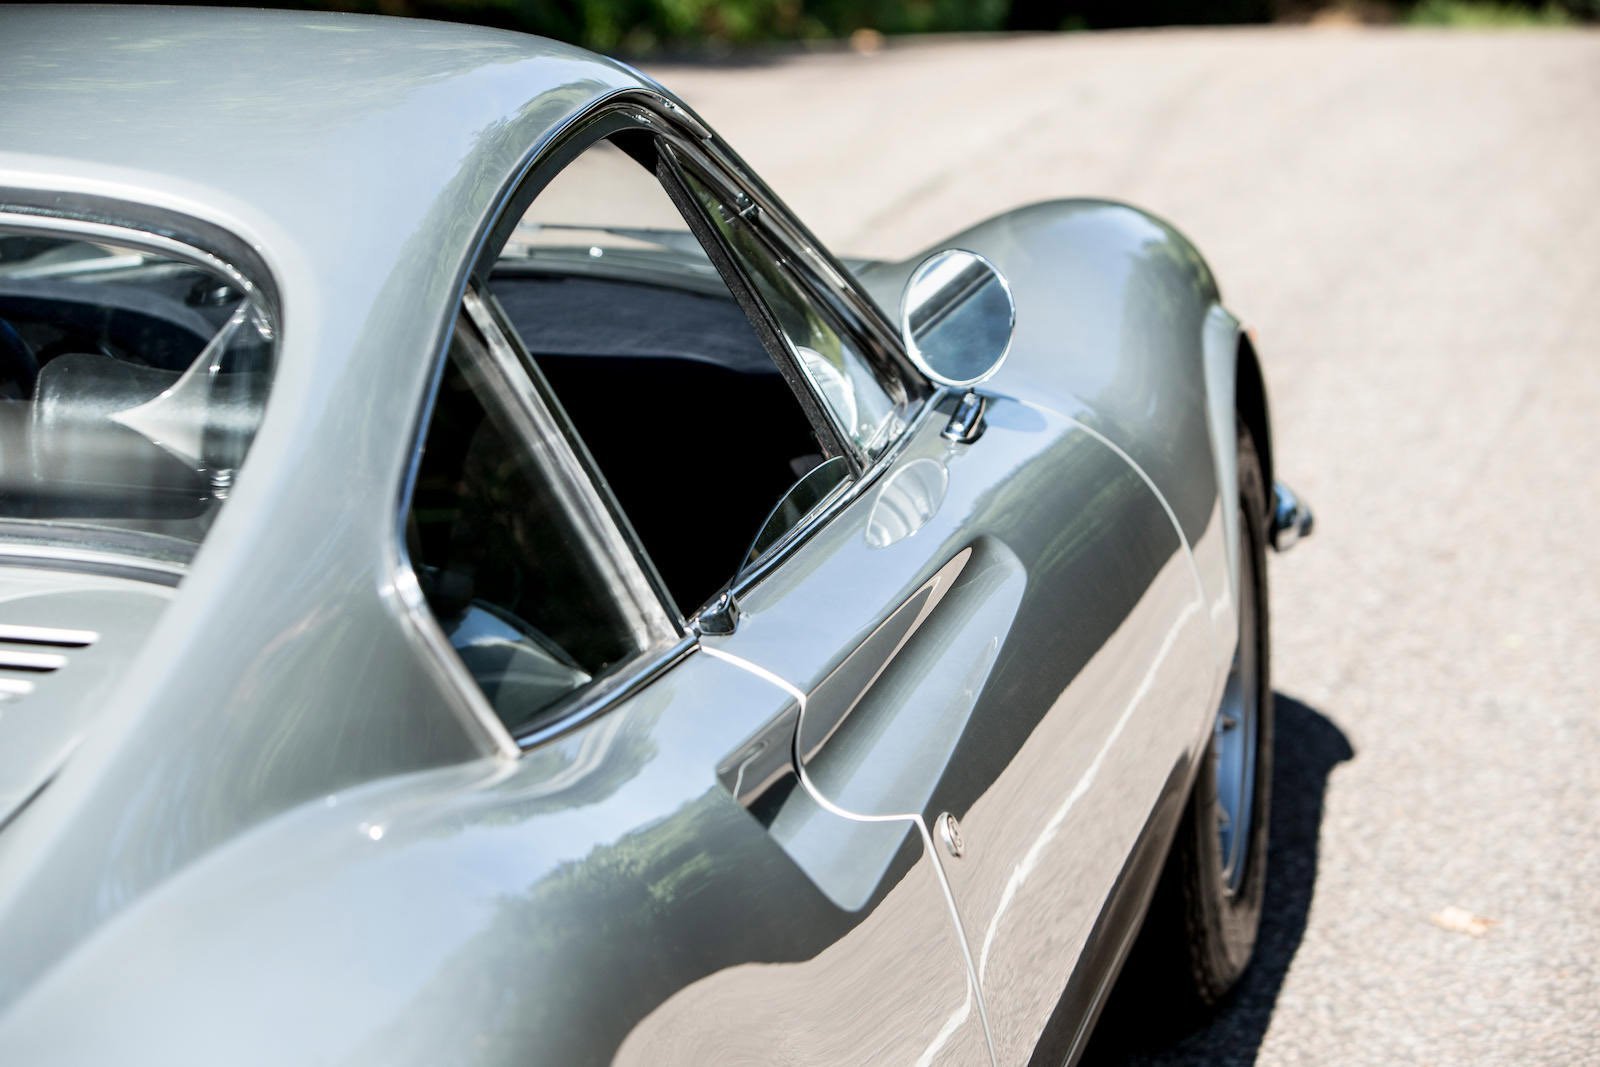 Ferrari 246 GT Dino, ve kterém během evropských turné cestoval Keith Richards z Rolling Stones